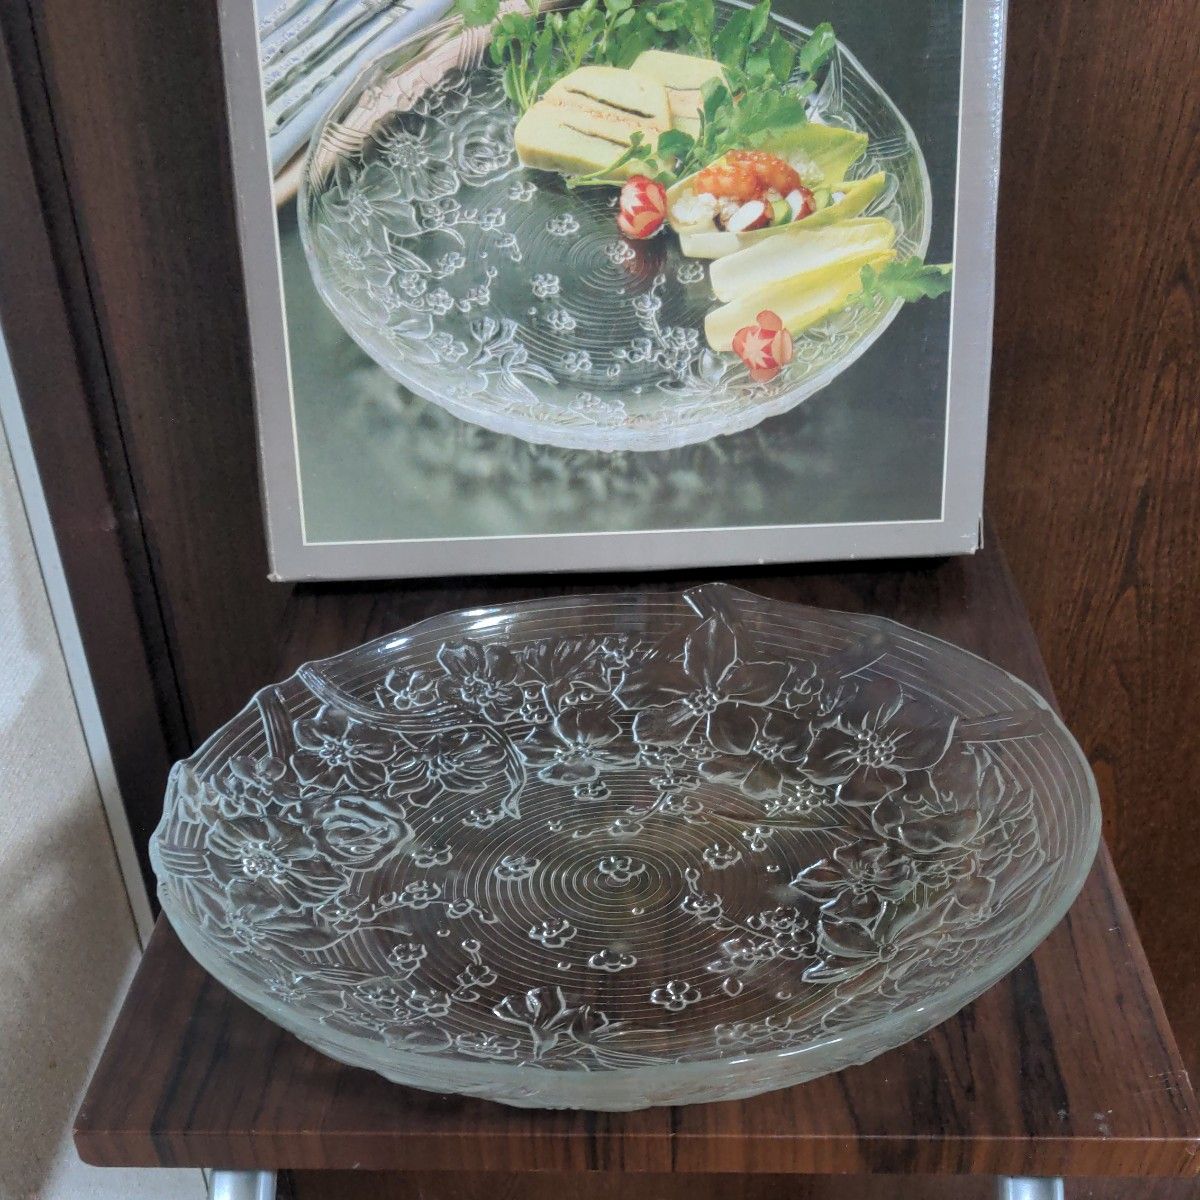 カメイガラス 株式会社のガラス 花柄プレート   盛皿 洋食器  スイカ皿  皿幅は32C   高さは4.5C  未使用品  